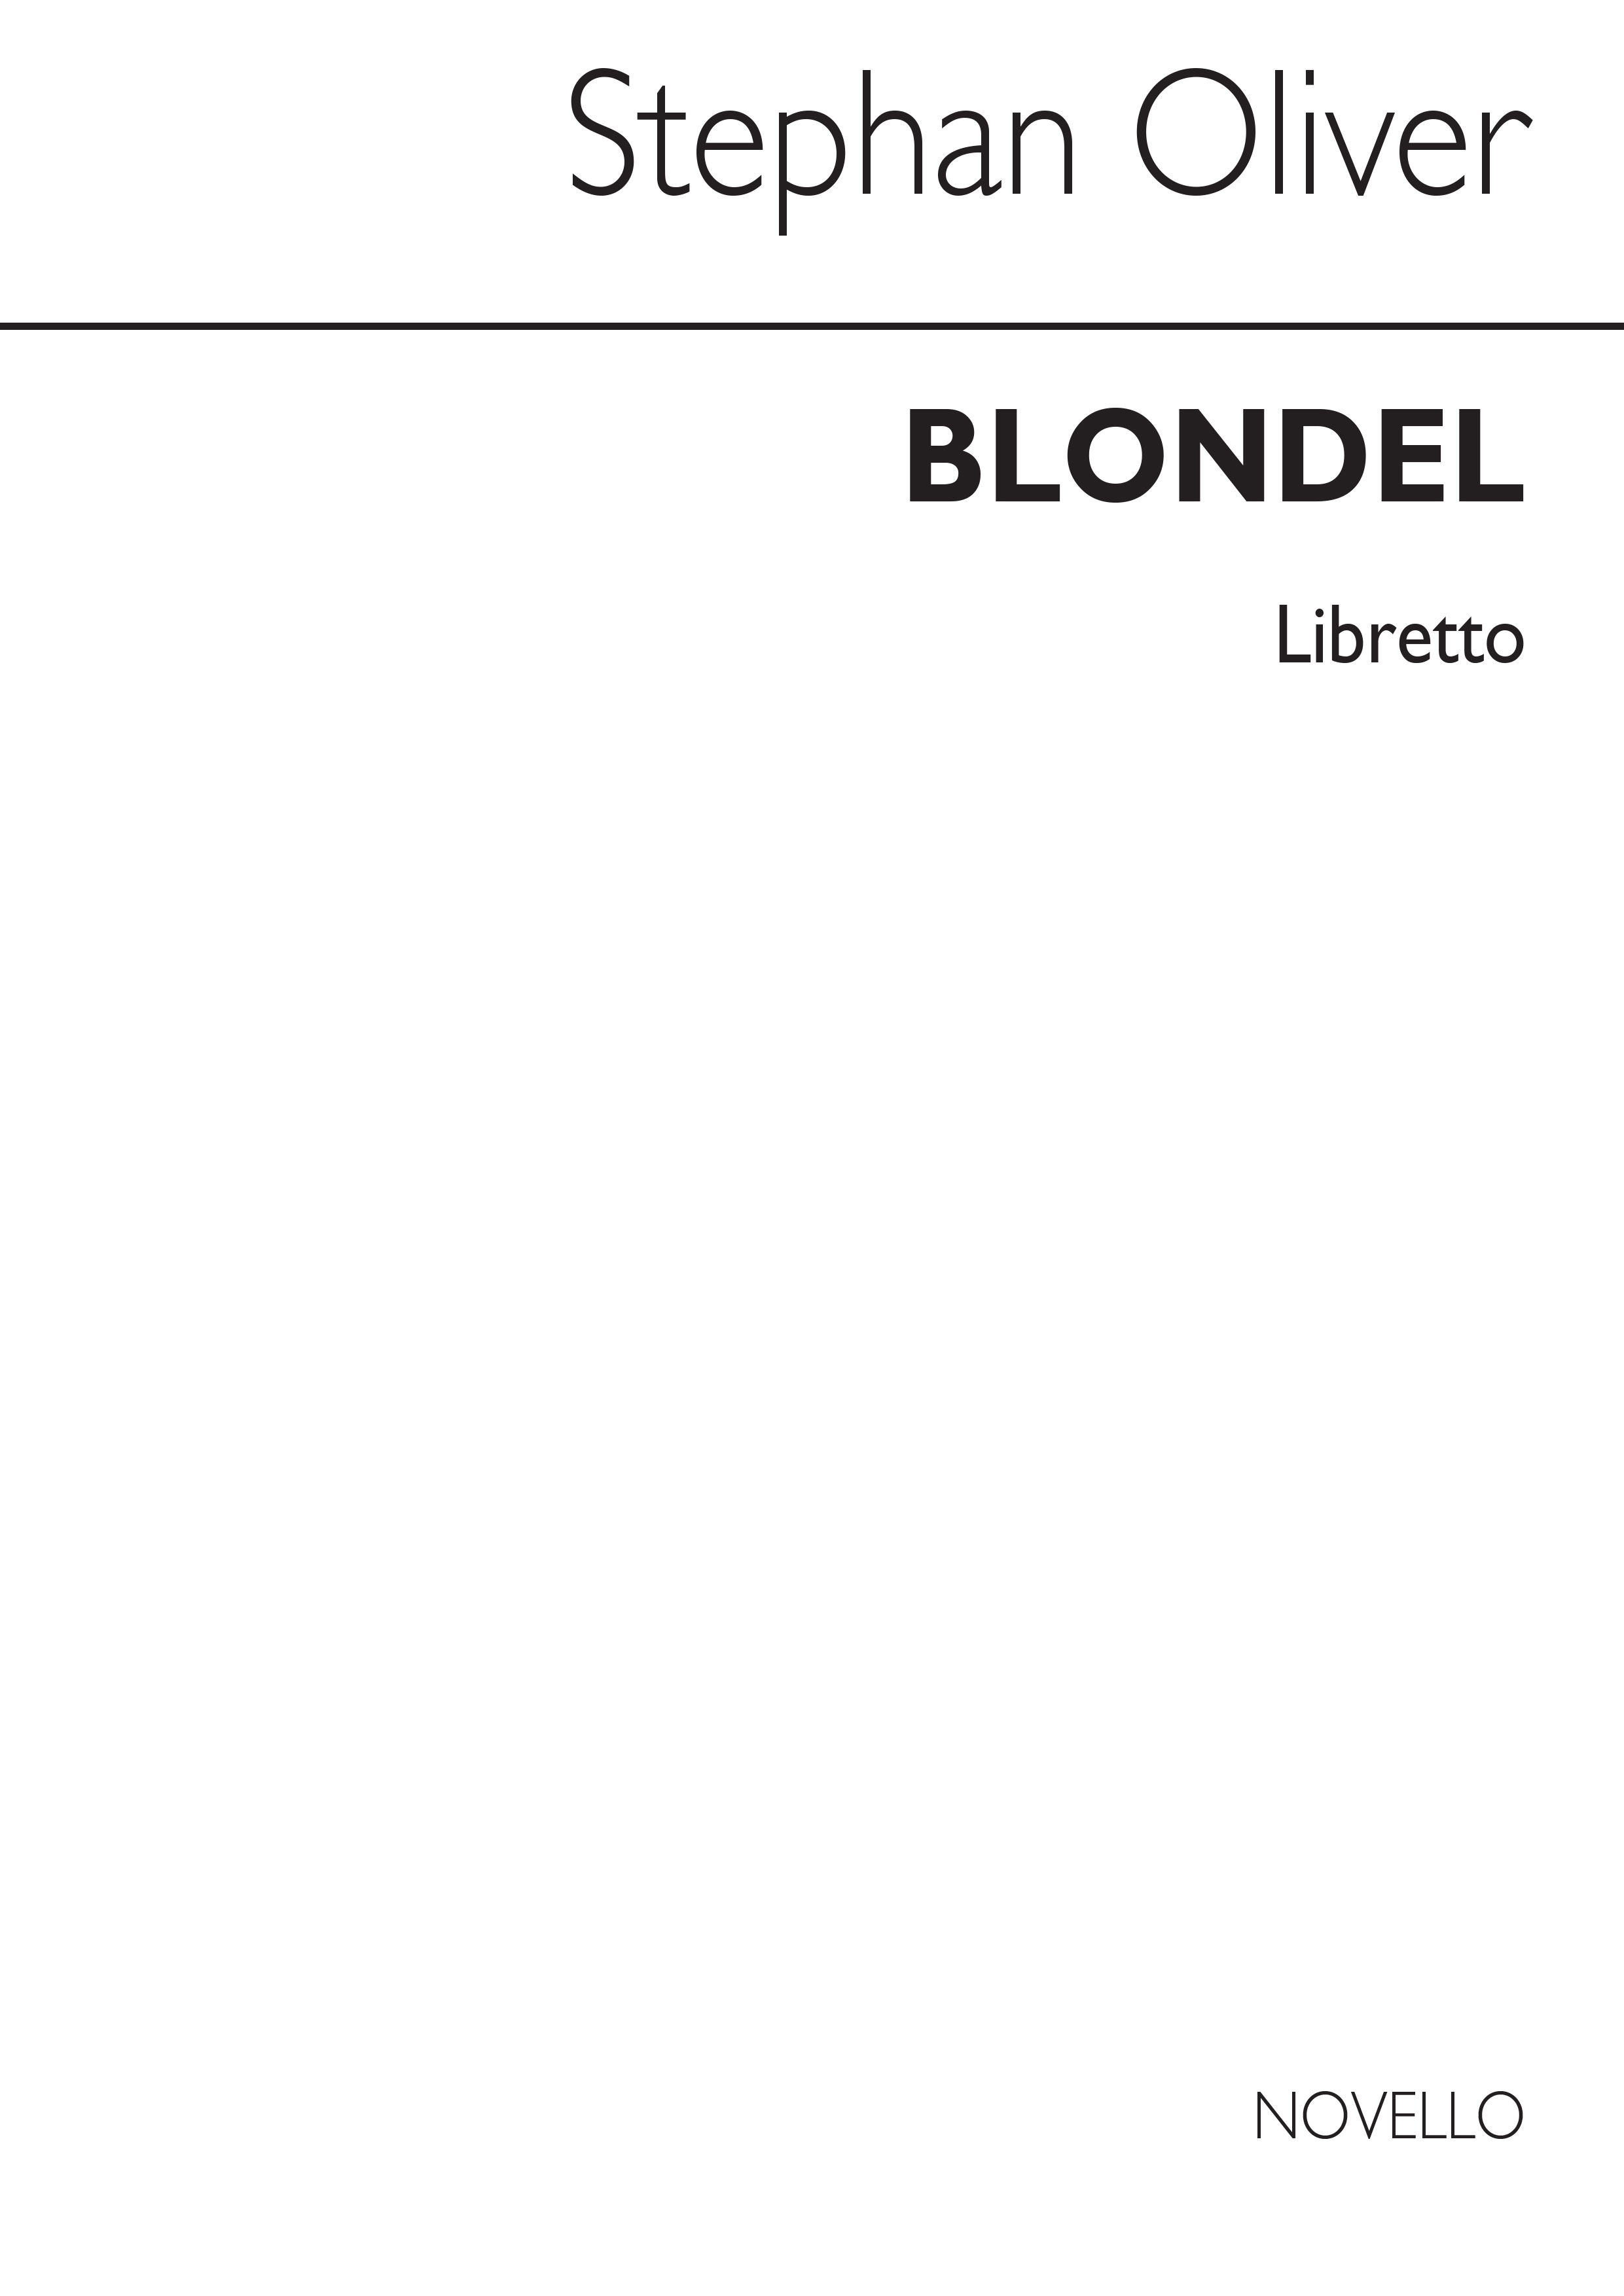 Rice: Blondel (Libretto)